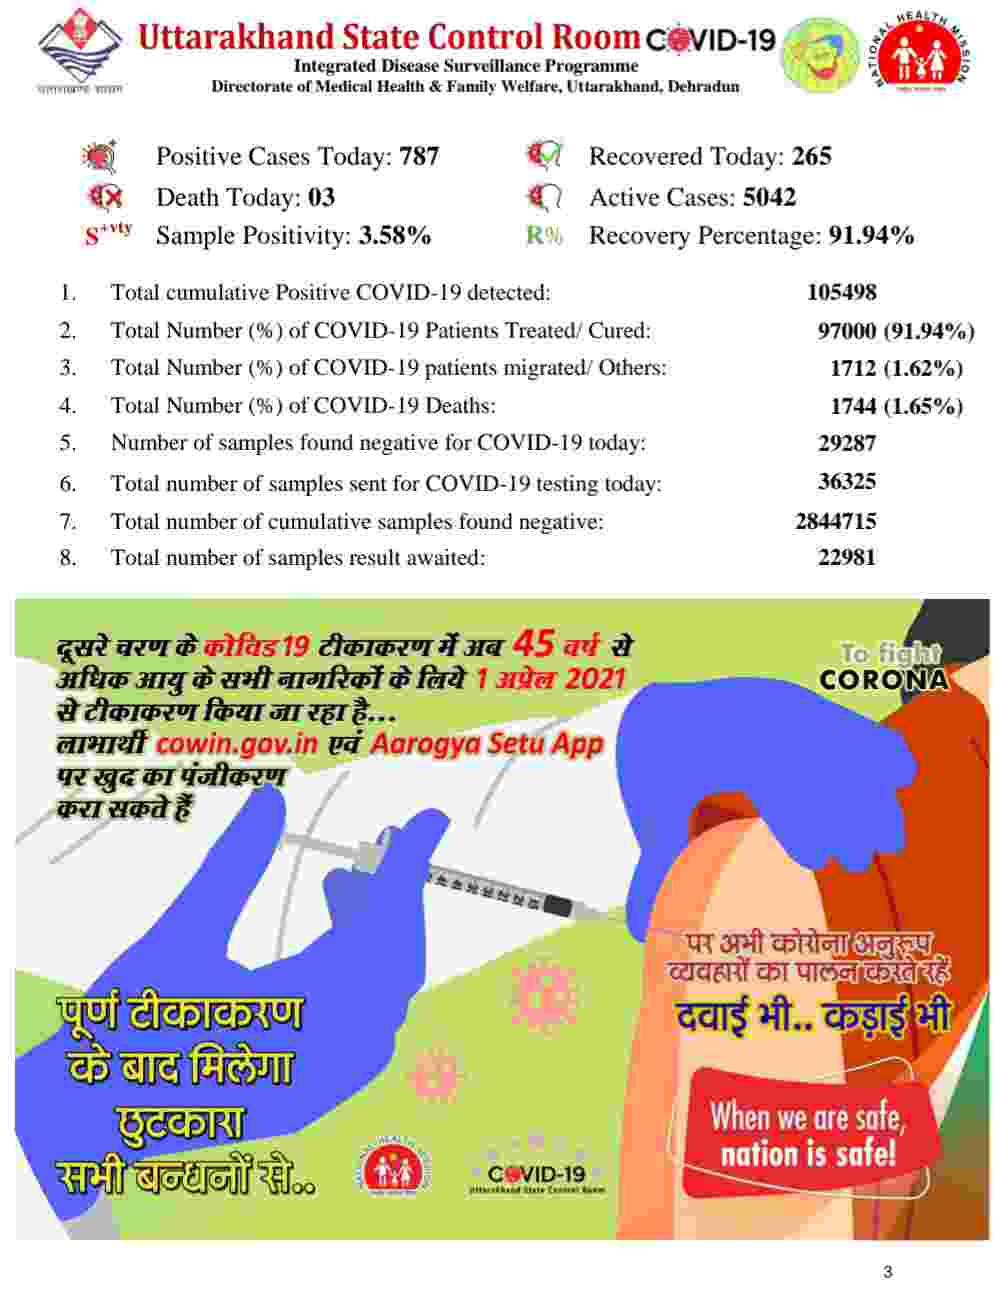 कोरोना बुलेटिन: उत्तराखंड में 787 नए कोविड-19 मरीज़, 3 लोगों की मौत, देहरादून में 22 कंटेनमेंट जोन 4 Hello Uttarakhand News »